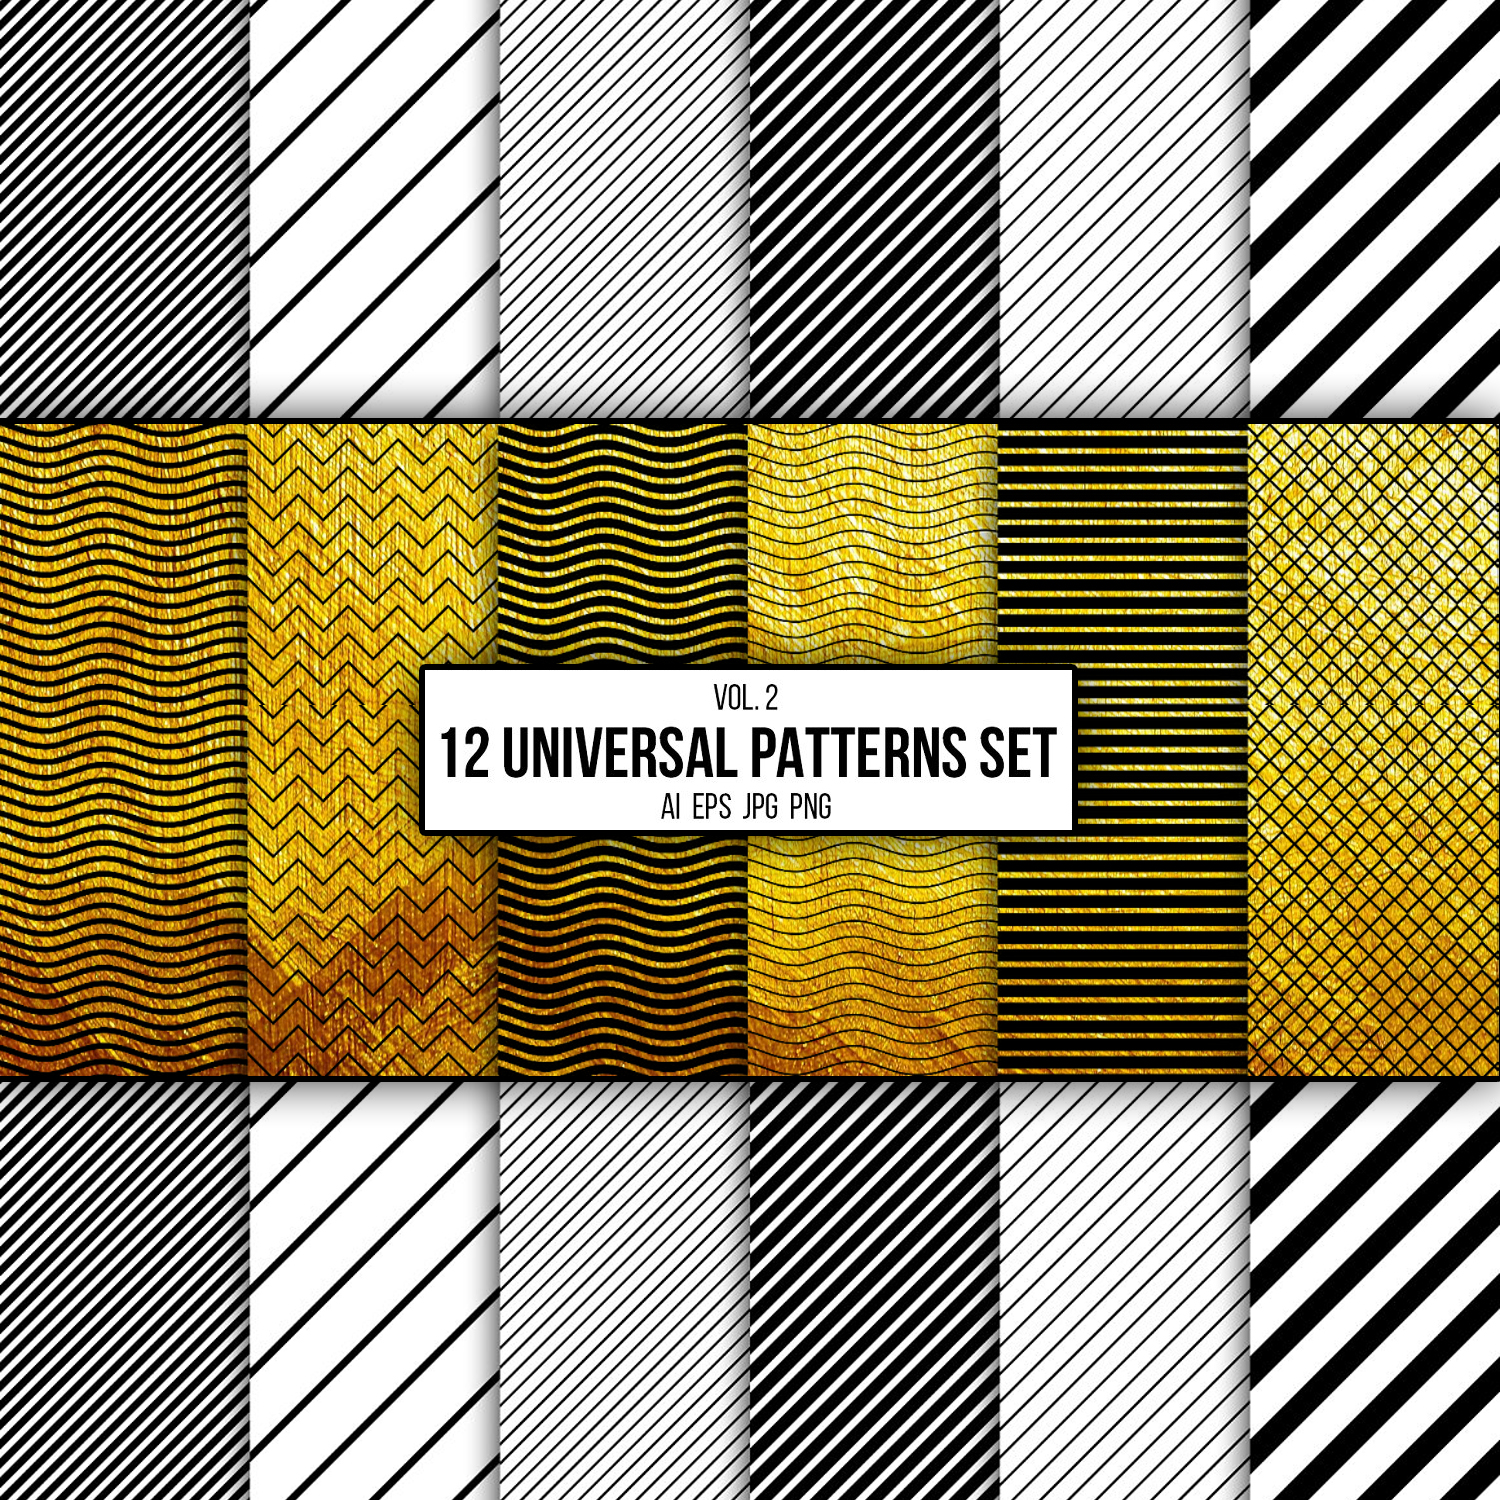 12 universal patterns set in image.